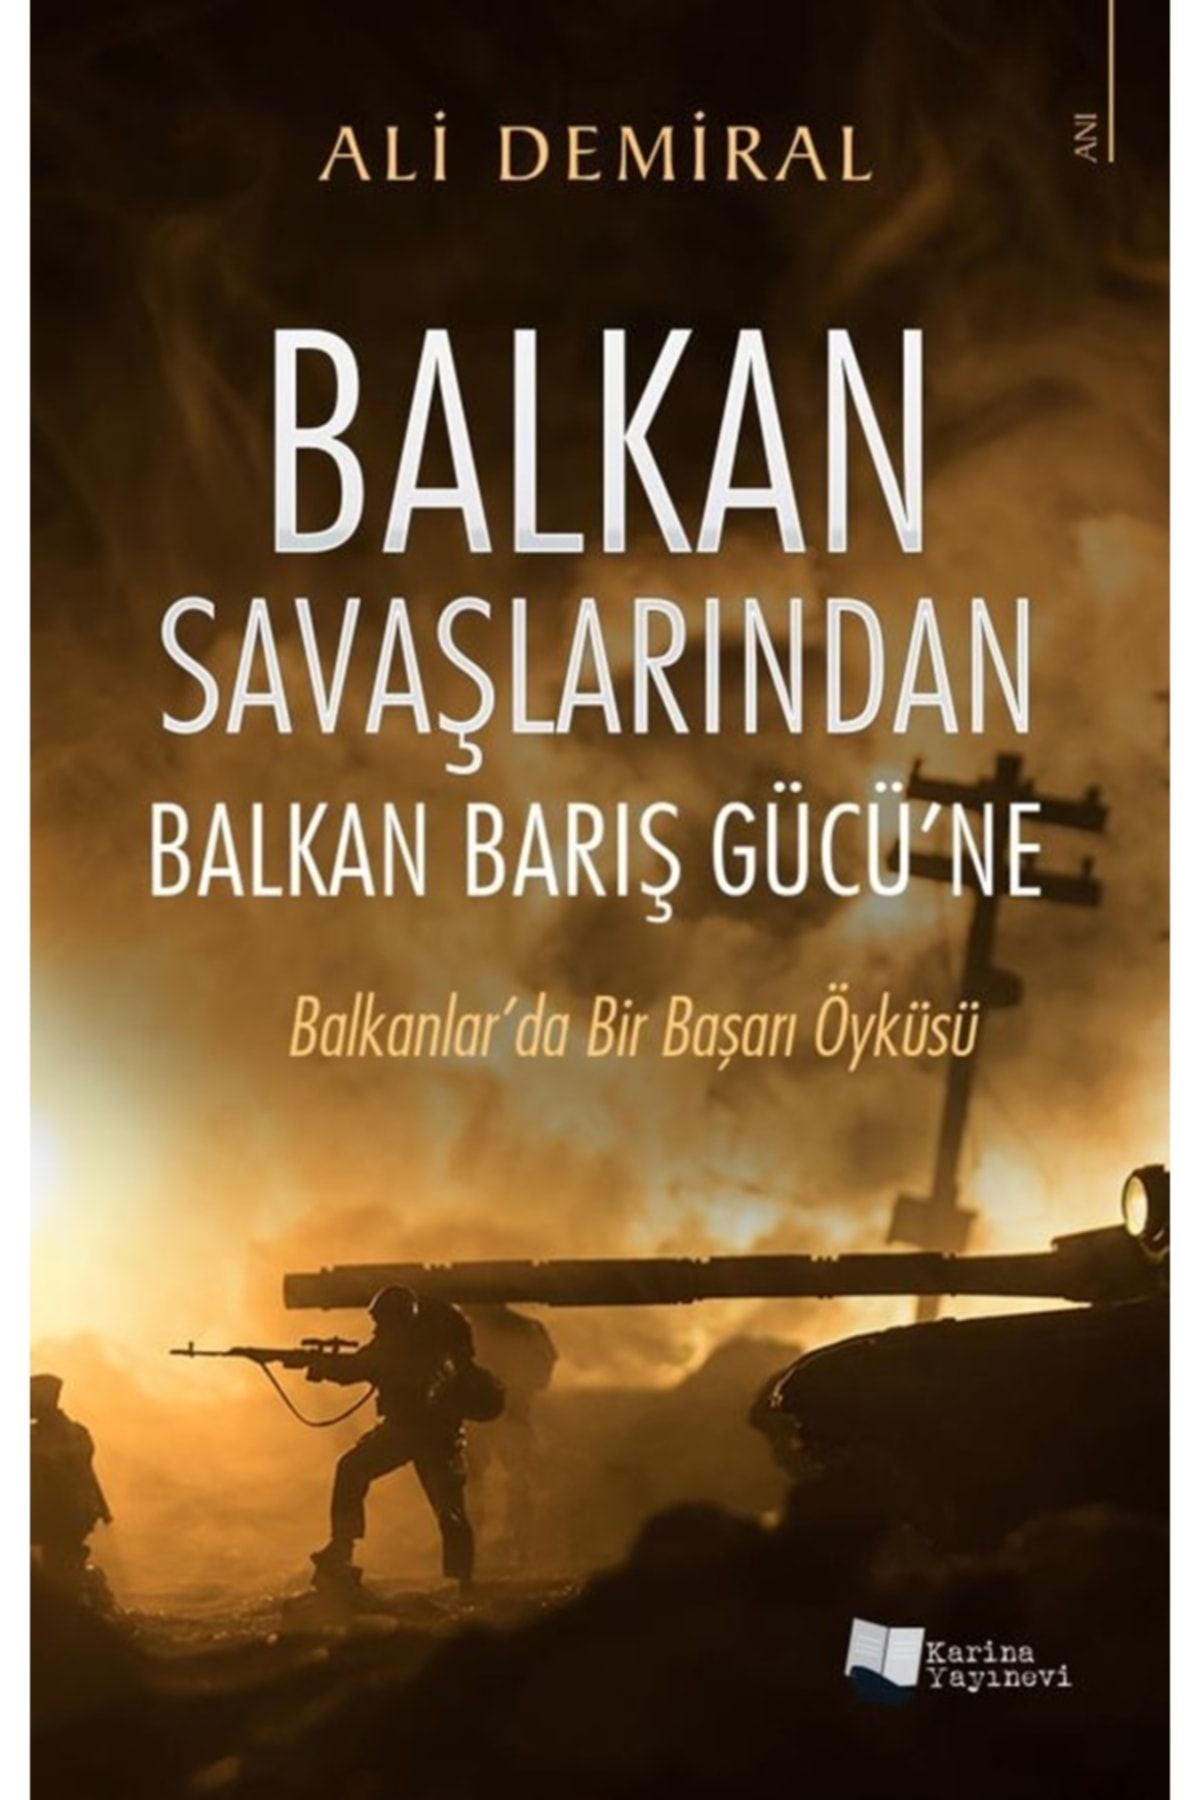 Karina Yayınevi Balkan Savaşlarından Balkan Barış Gücü'ne (balkanlar'da Bir Başarı Öyküsü) - Ali Demiral